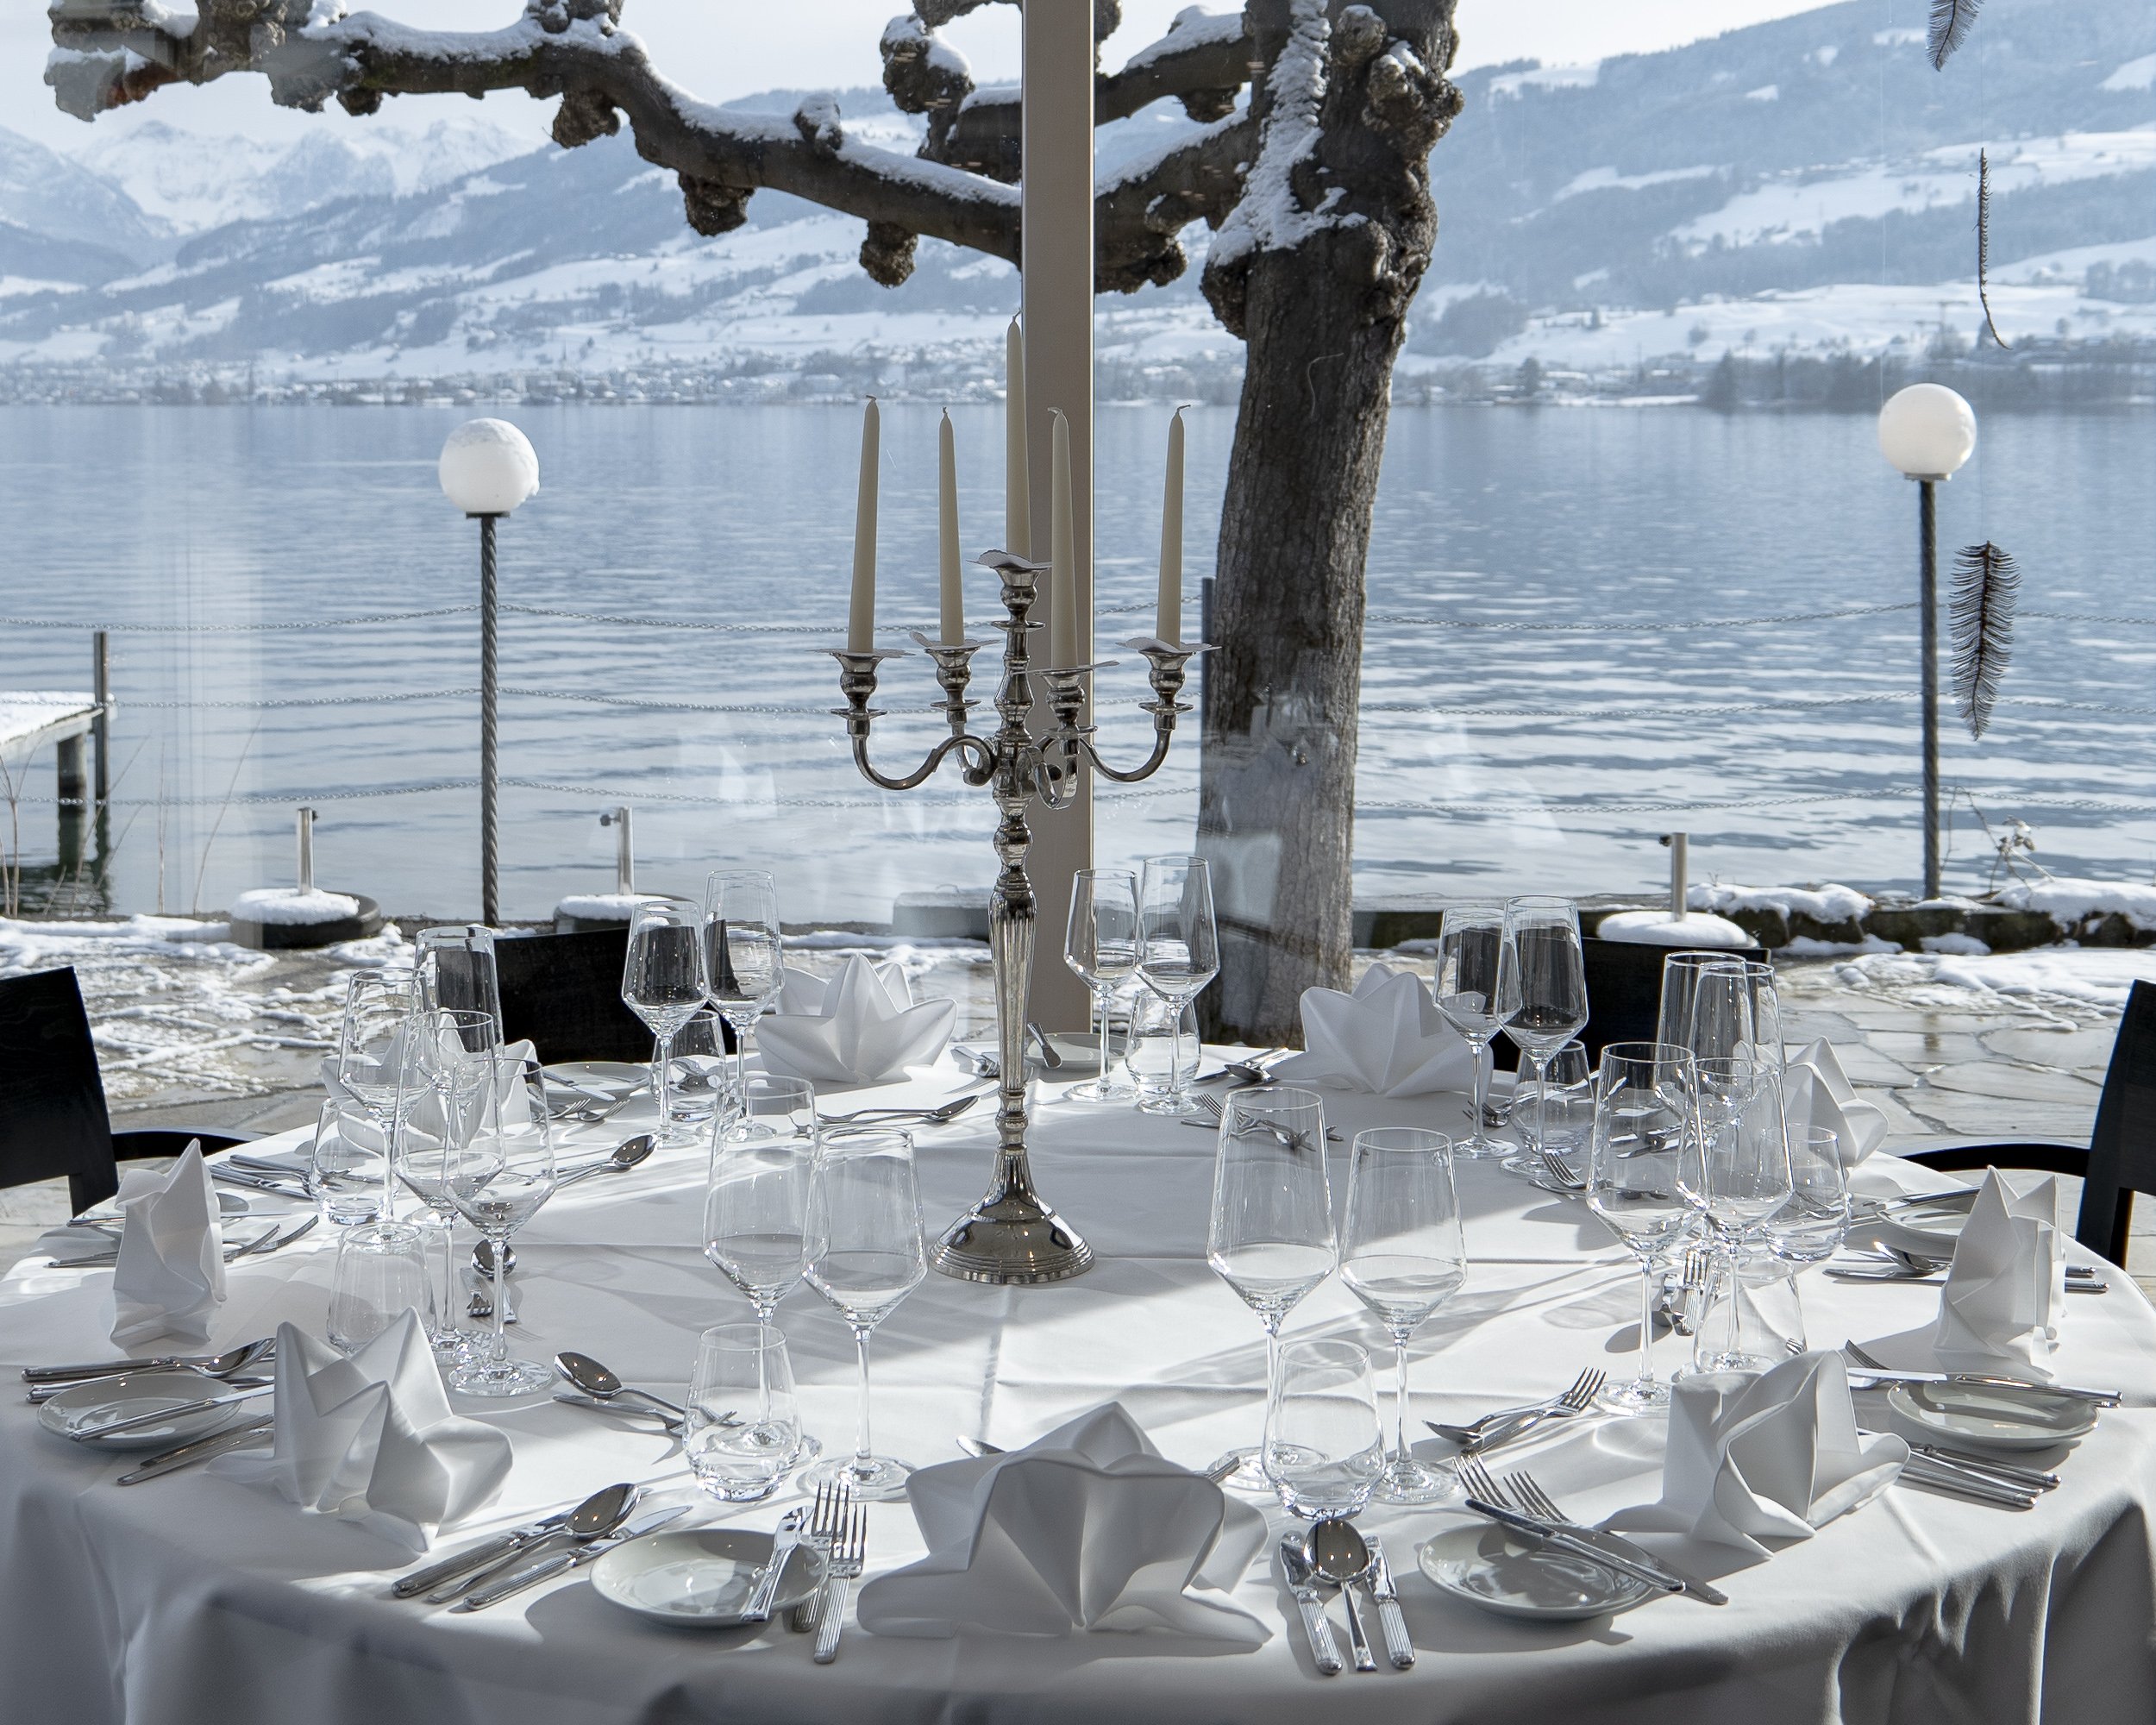 Ein weiss gedeckter Tisch im Seepavillon. Festliches Ambiente mit grossem Kerzenständer. Hinter den grossen Fenstern liegt der winterliche See.